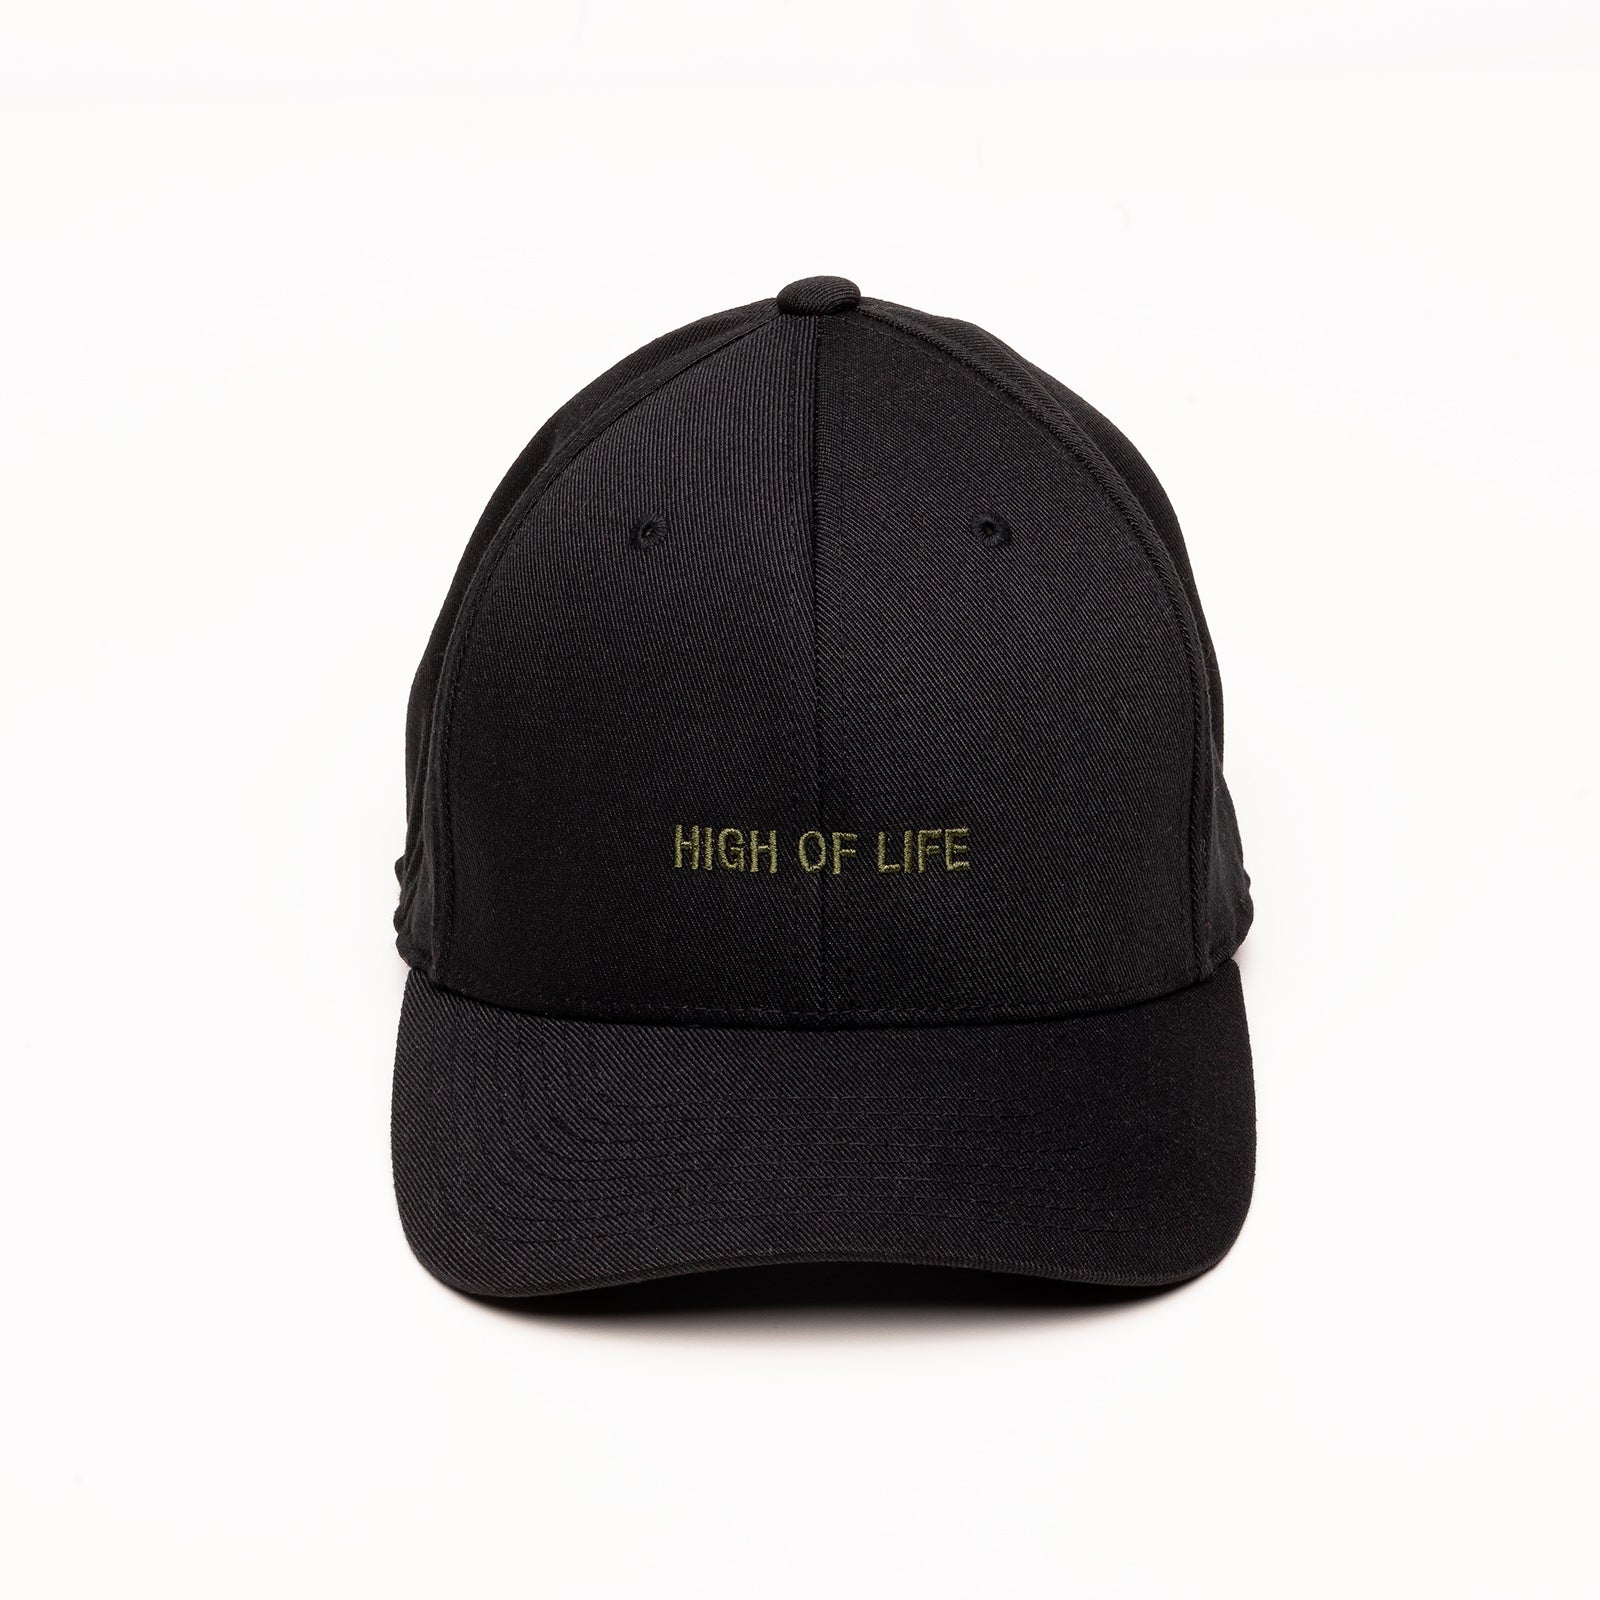 Norm cap high of life